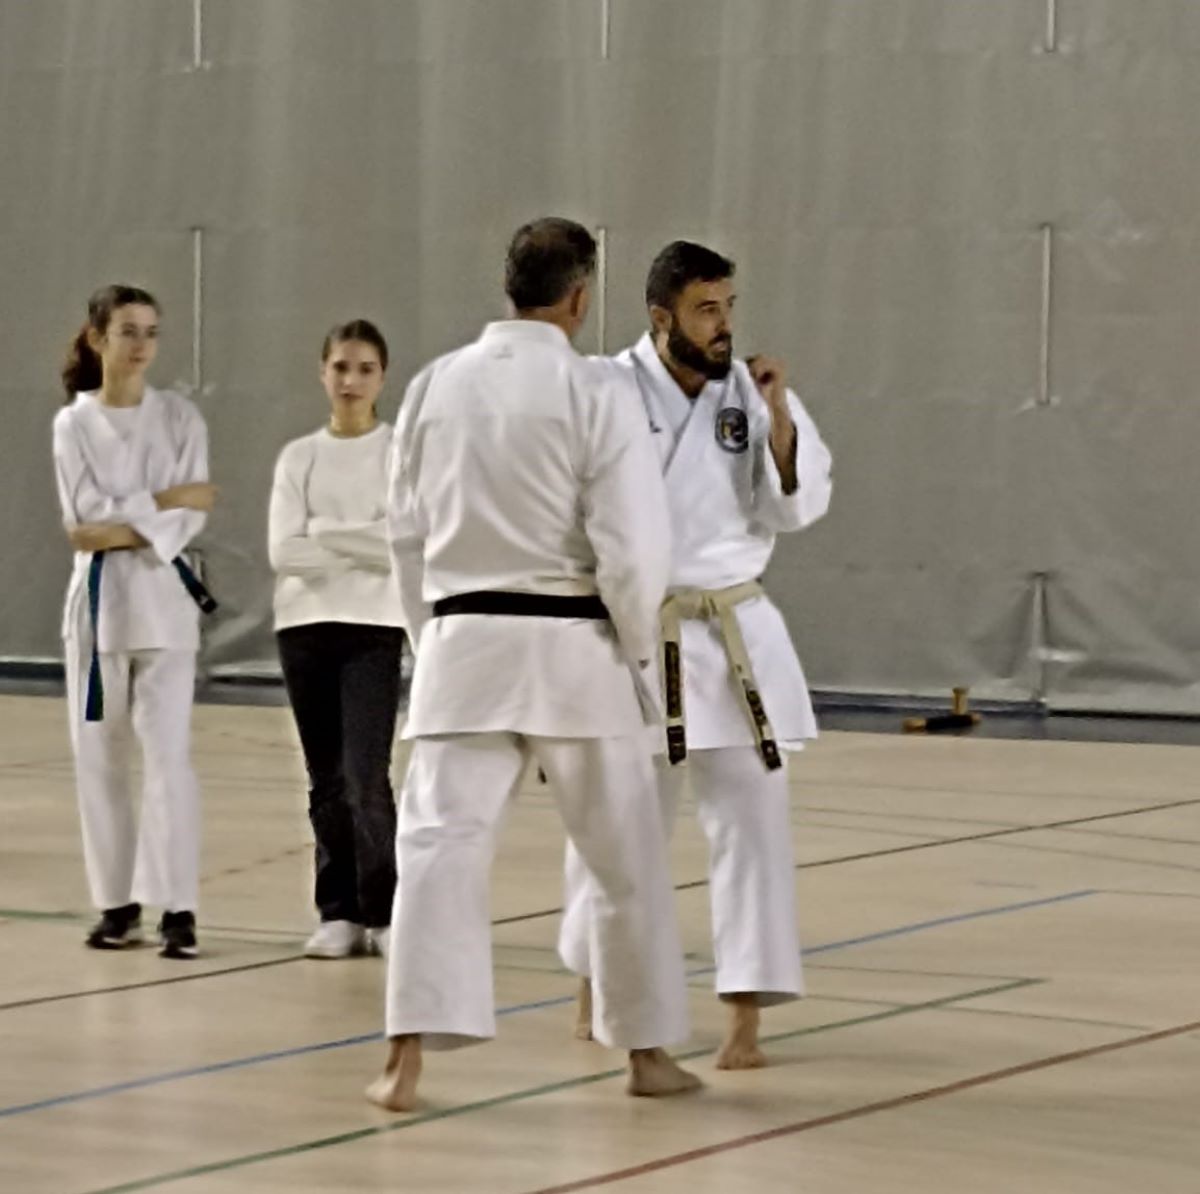 El tomellosero Antonio Gutiérrez, campeón del mundo de Para-karate, participa en unas jornadas de karate inclusivo